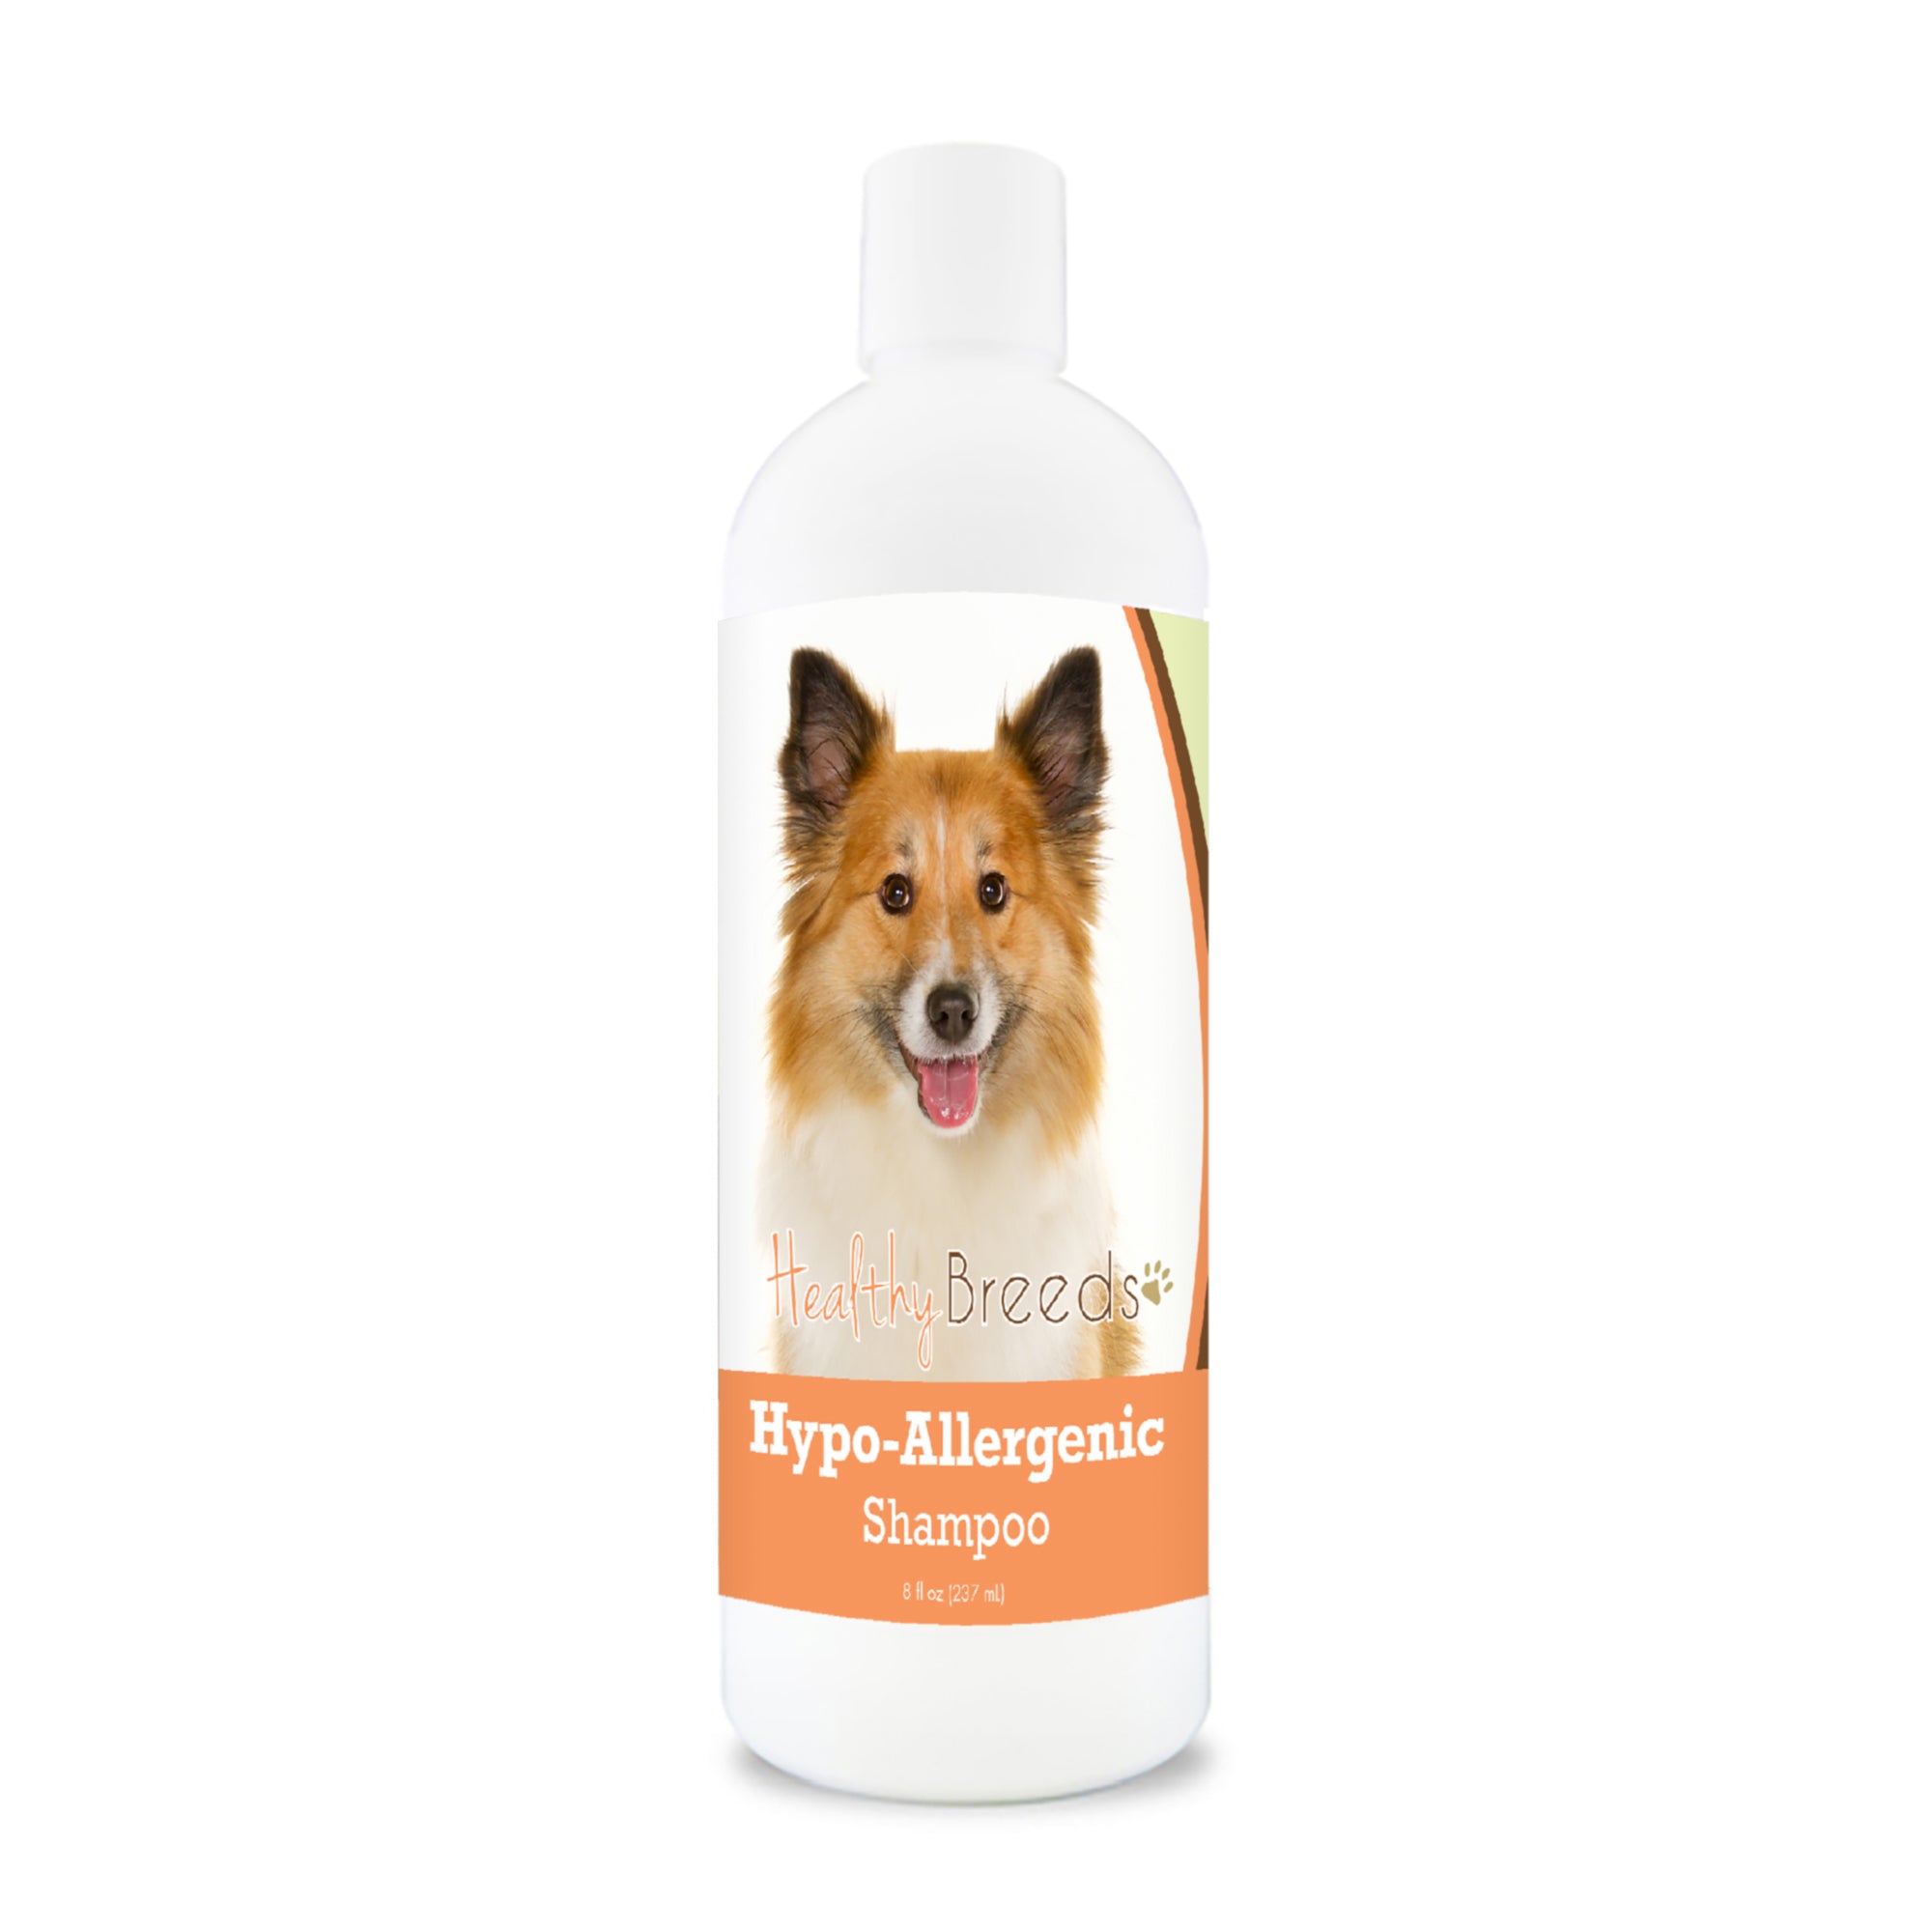 Icelandic Sheepdog Hypo-Allergenic Shampoo 8 oz